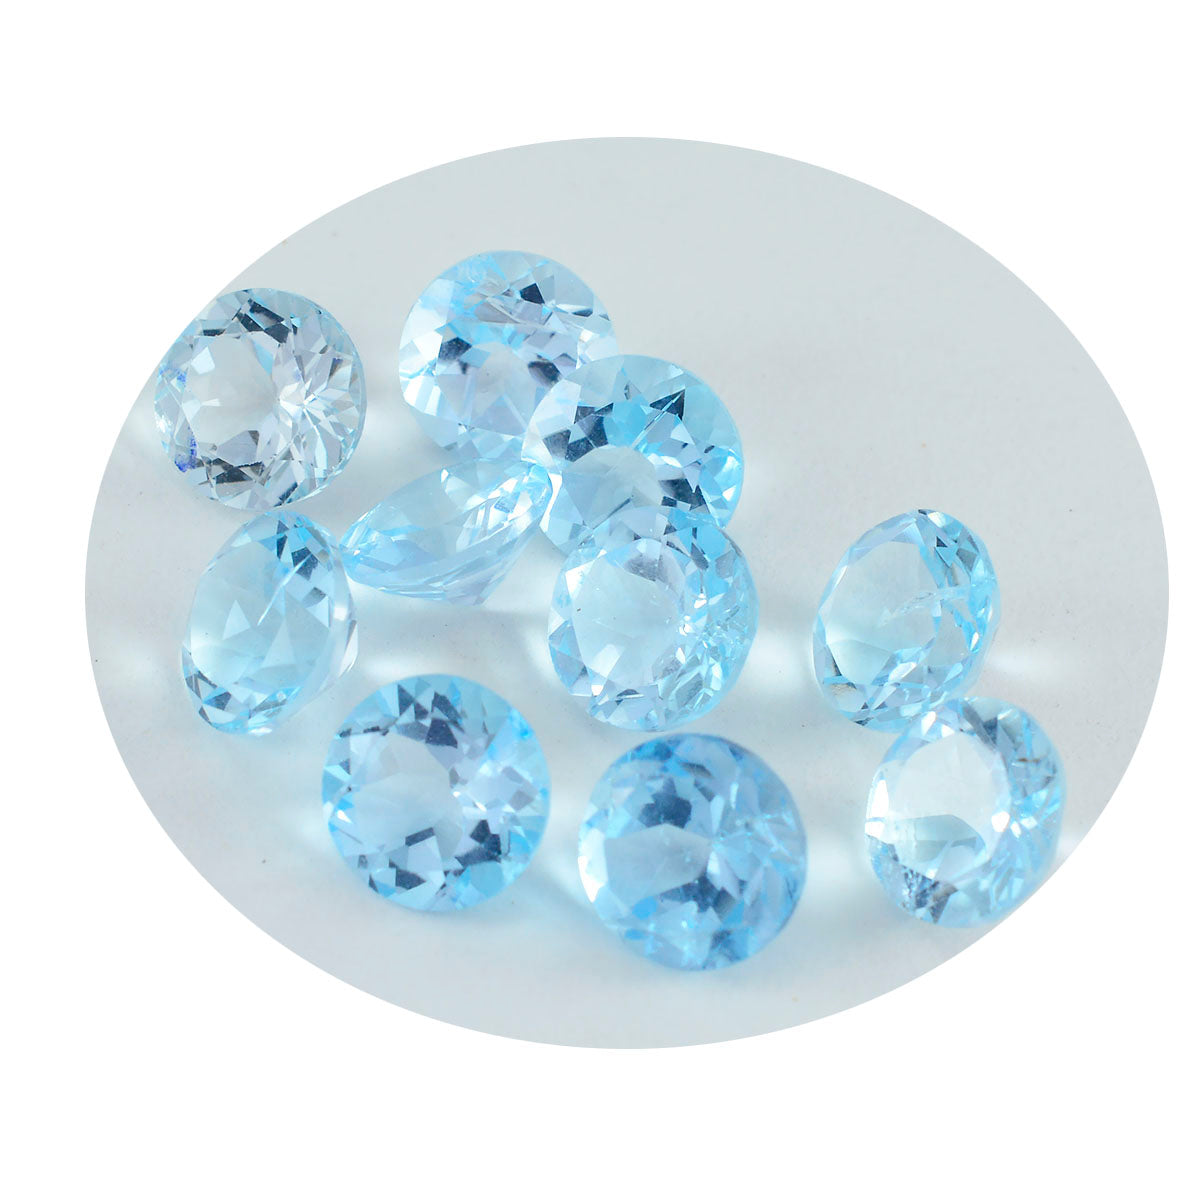 riyogems 1шт натуральный синий топаз ограненный 4x4 мм круглая форма милые качественные свободные драгоценные камни